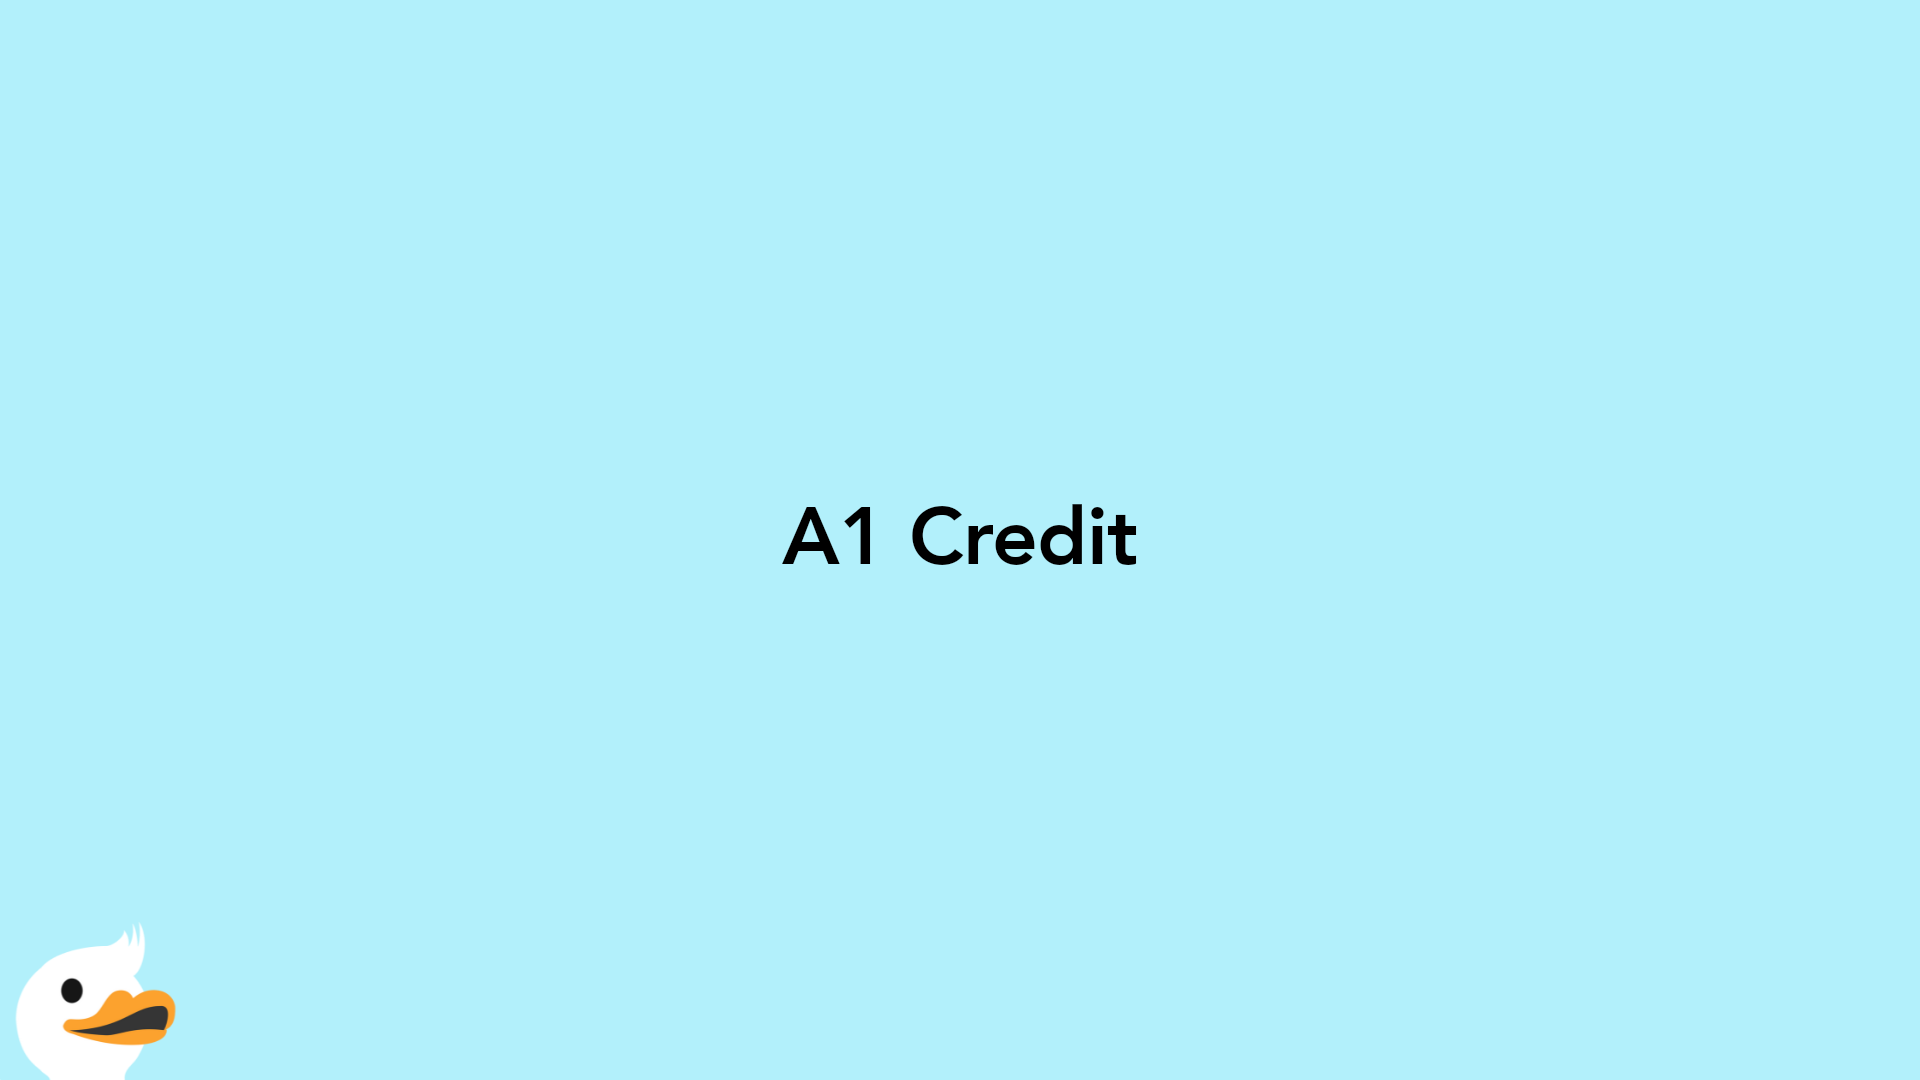 A1 Credit